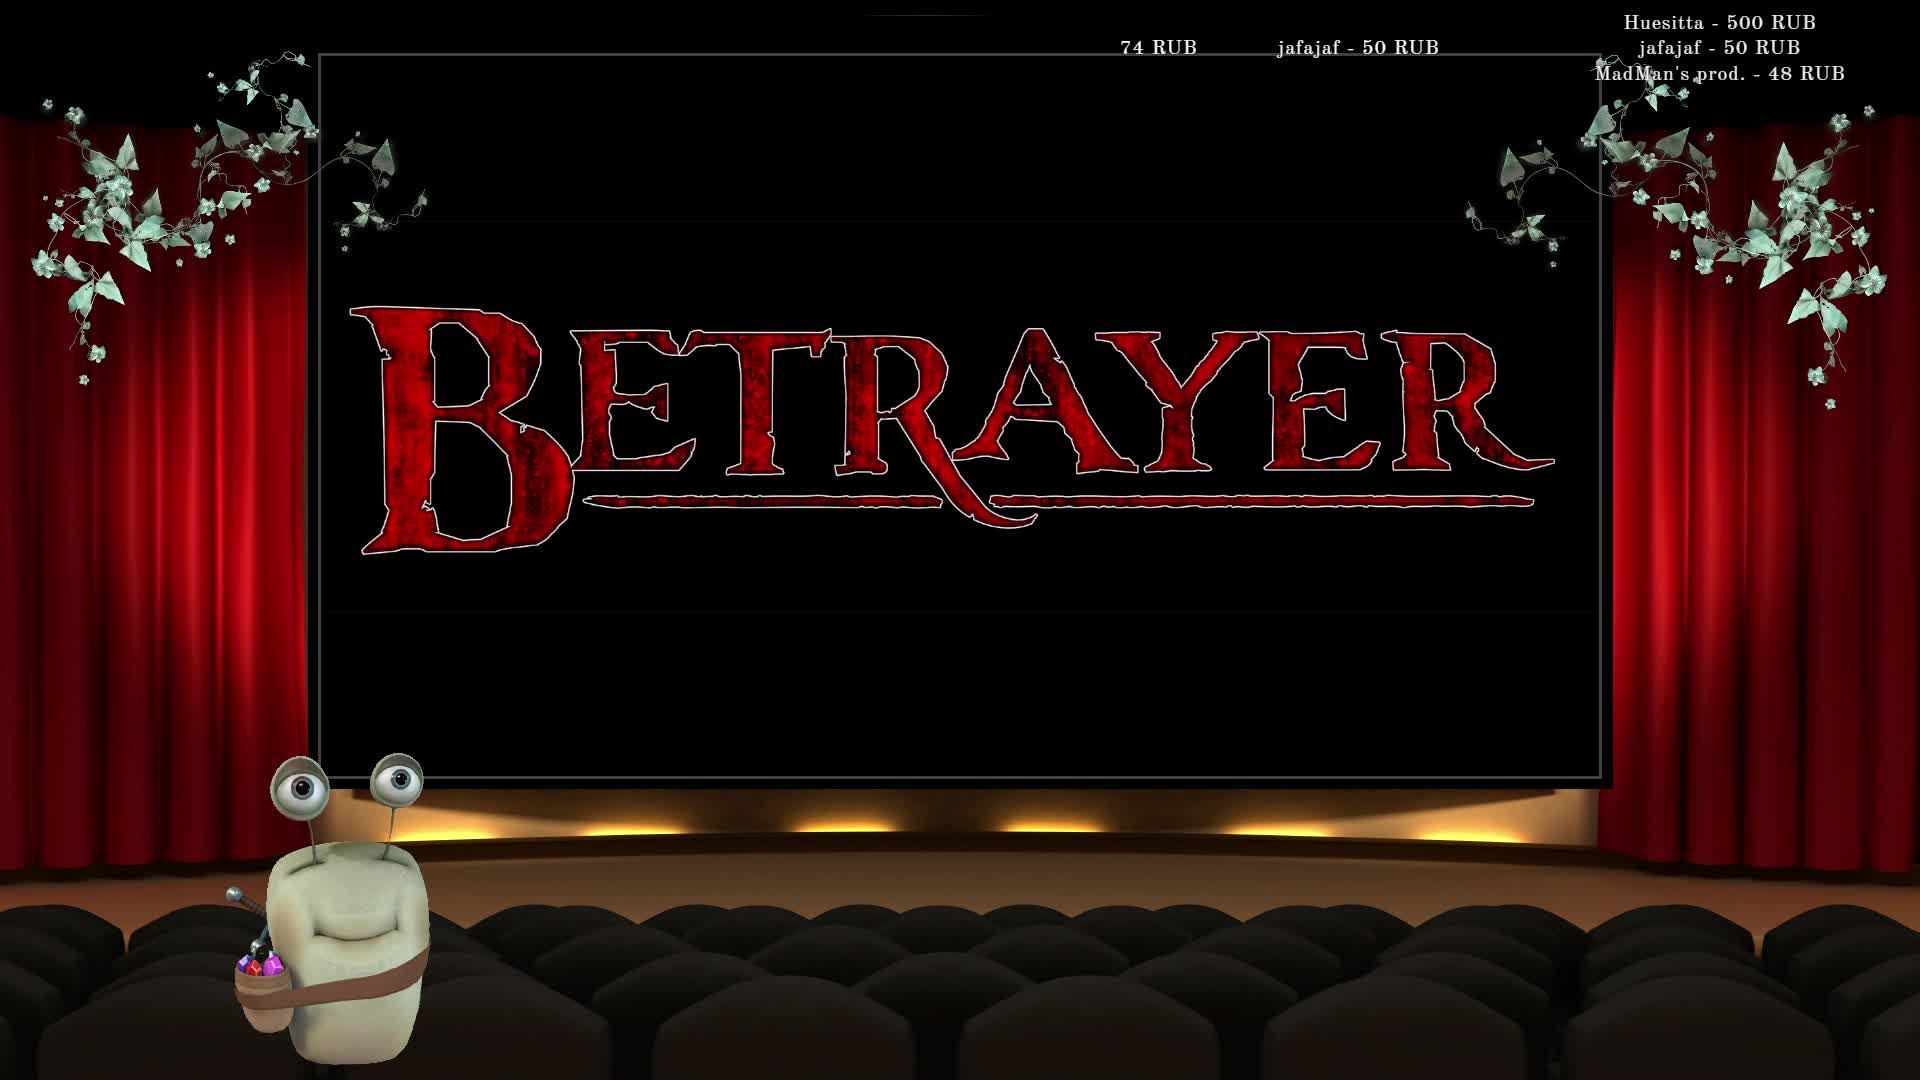 Betrayer - Неспешное прохождение